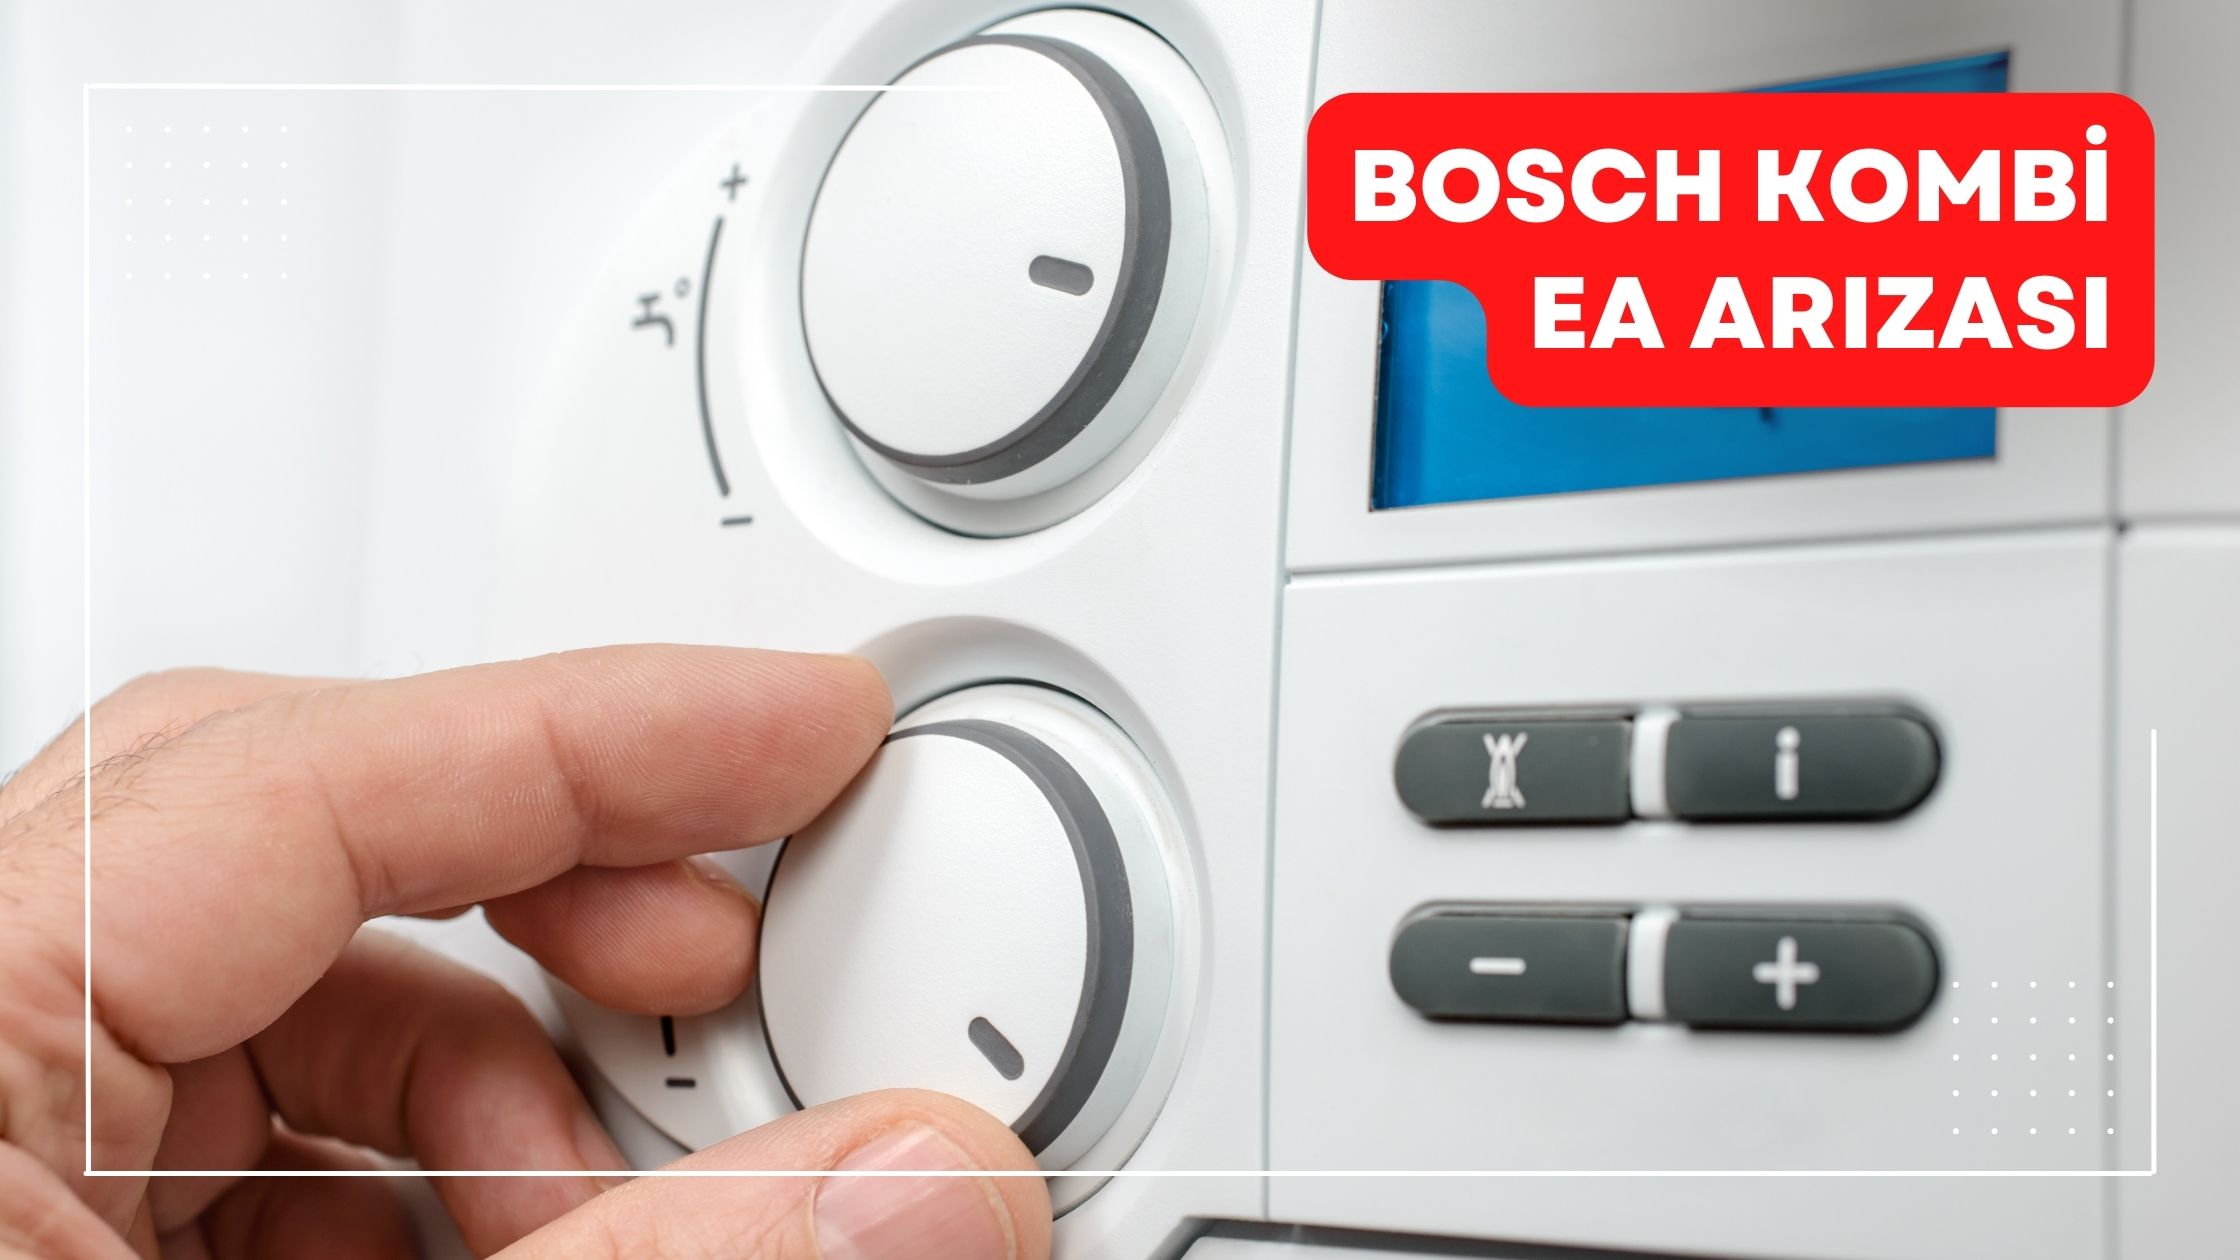 Bosch Kombi EA Arızası